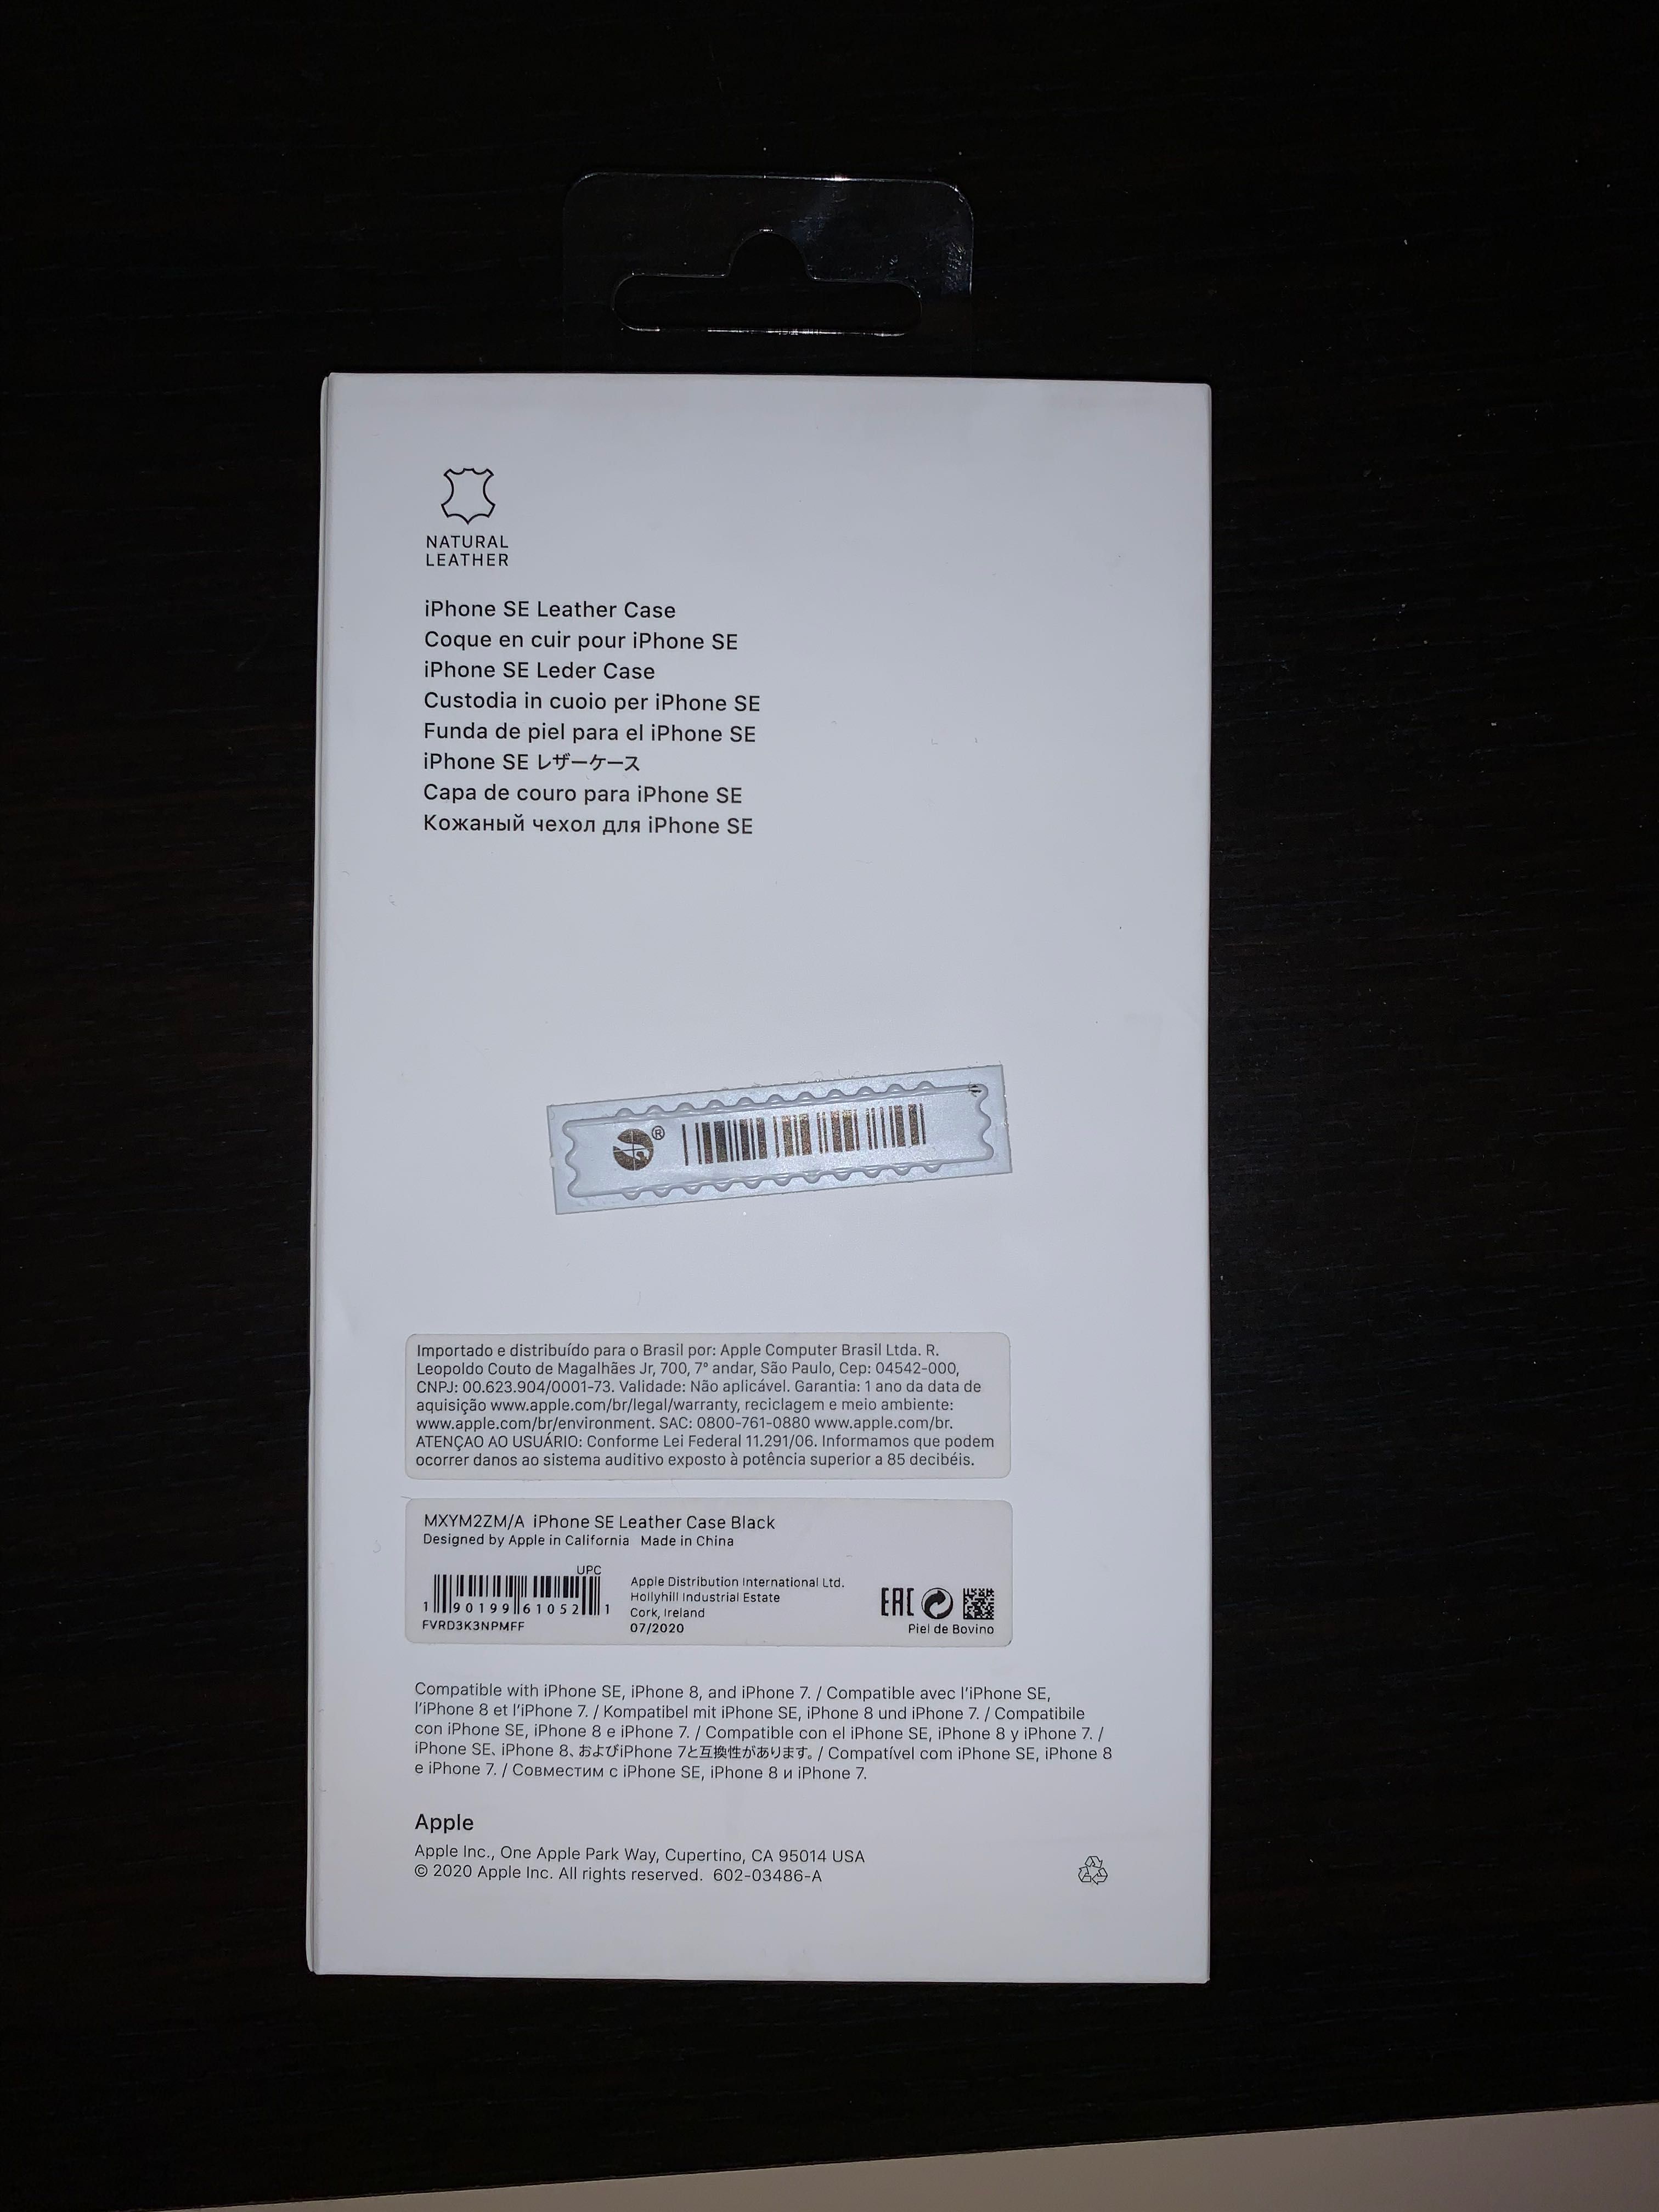 Husa Apple Iphone piele neagra, se 2 , 8 , 7, 6s originala Apple